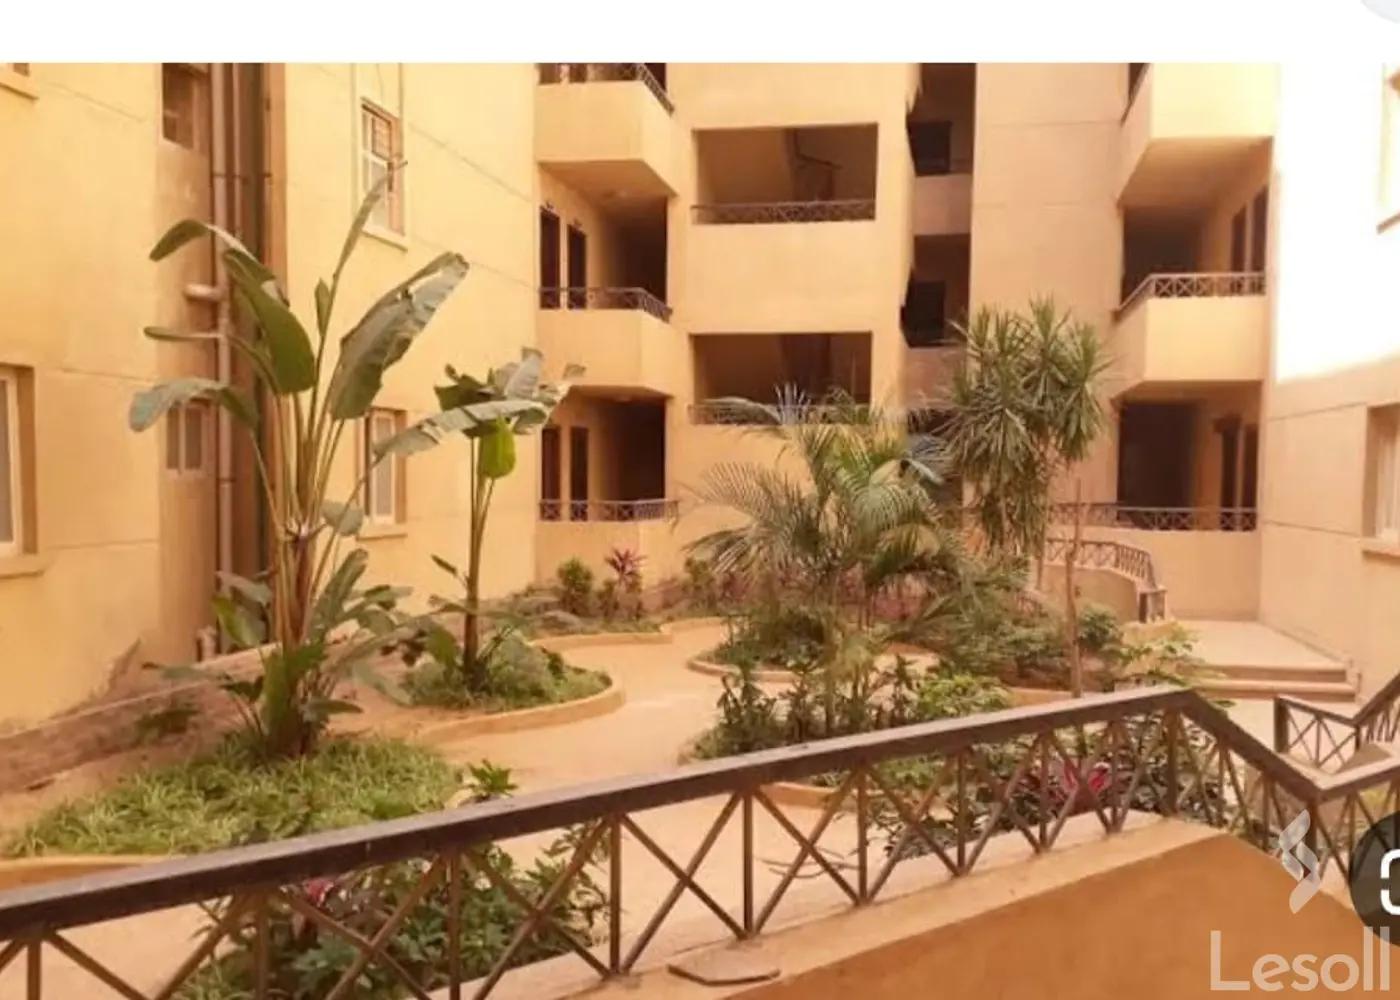  شقة للبيع في كمبوند بدايه 2 حدائق اكتوبر 